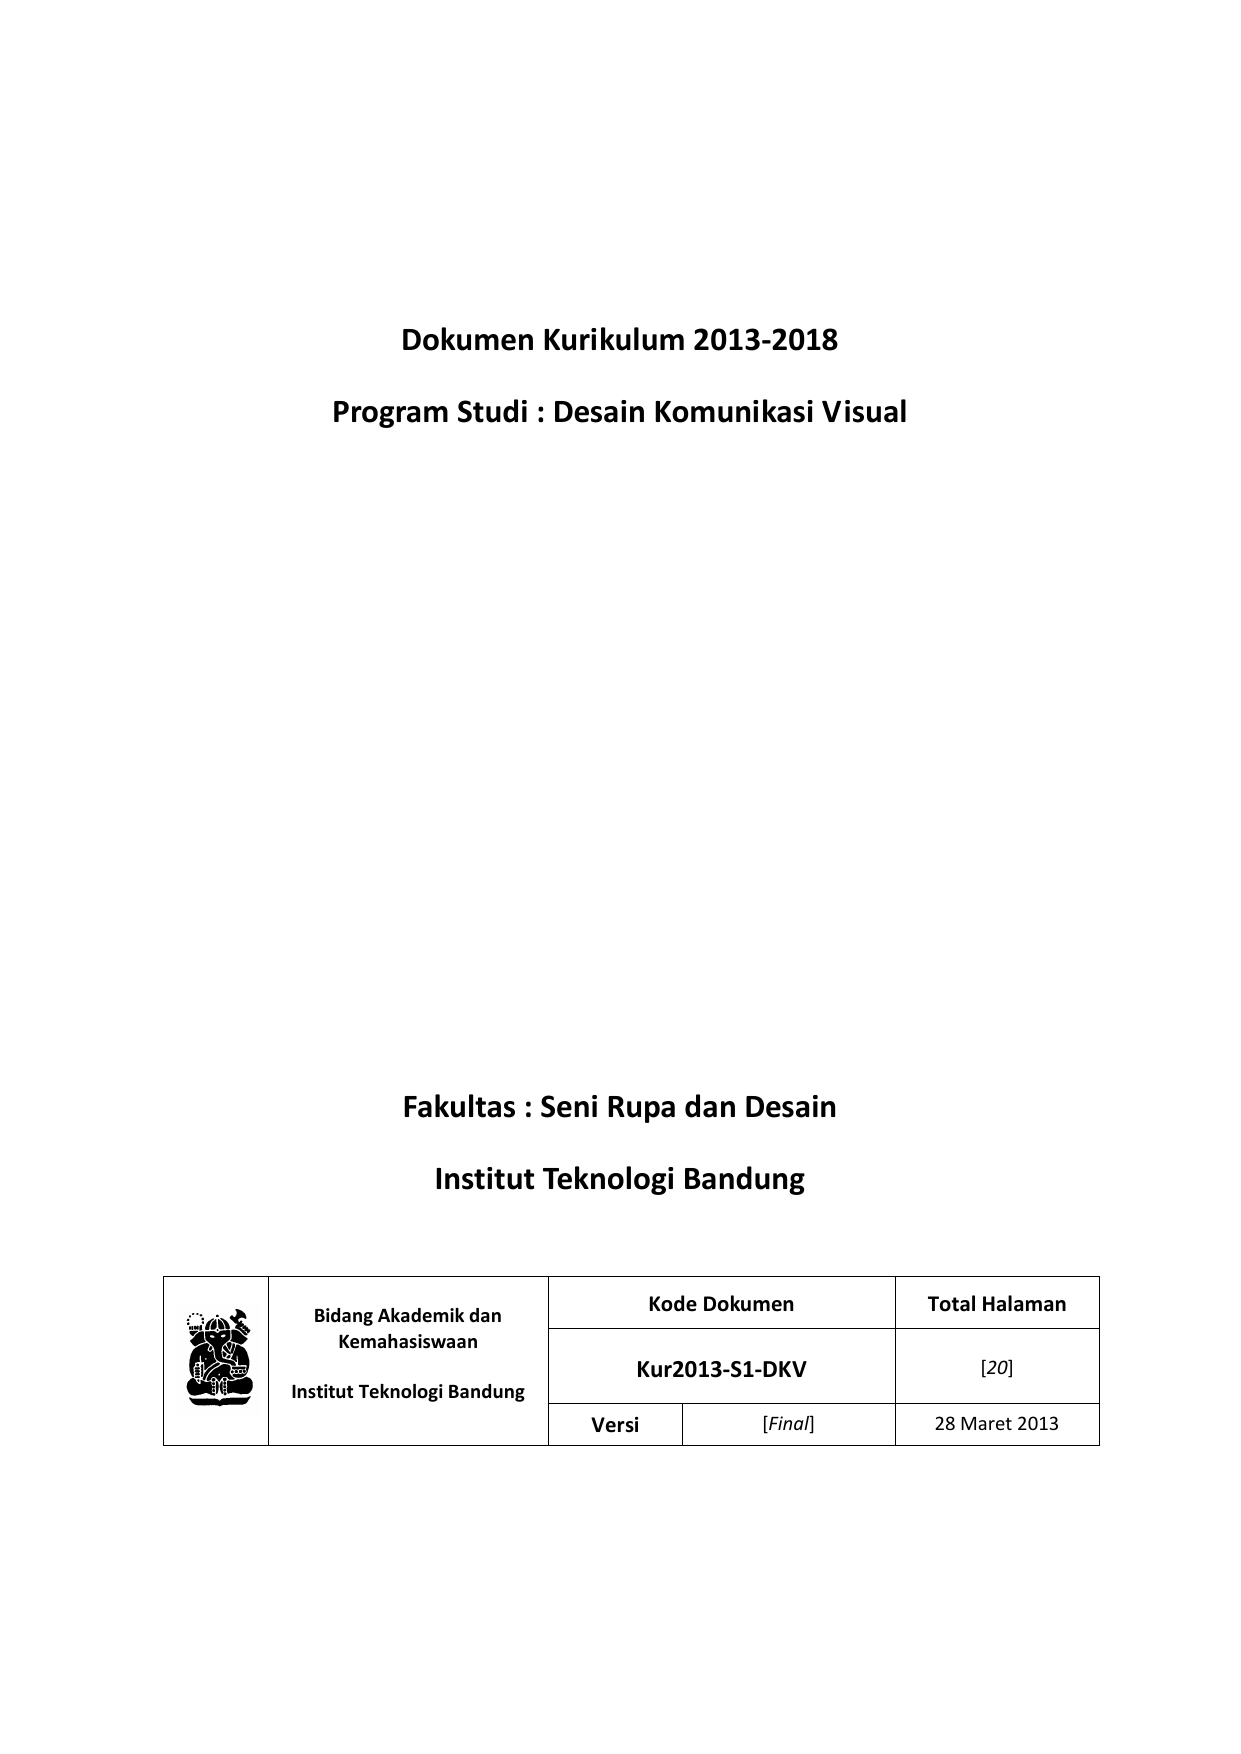 Dokumen Kurikulum 2013 2018 Program Studi Desain Komunikasi Visual Fakultas Seni Rupa dan Desain Institut Teknologi Bandung Bidang Akademik dan